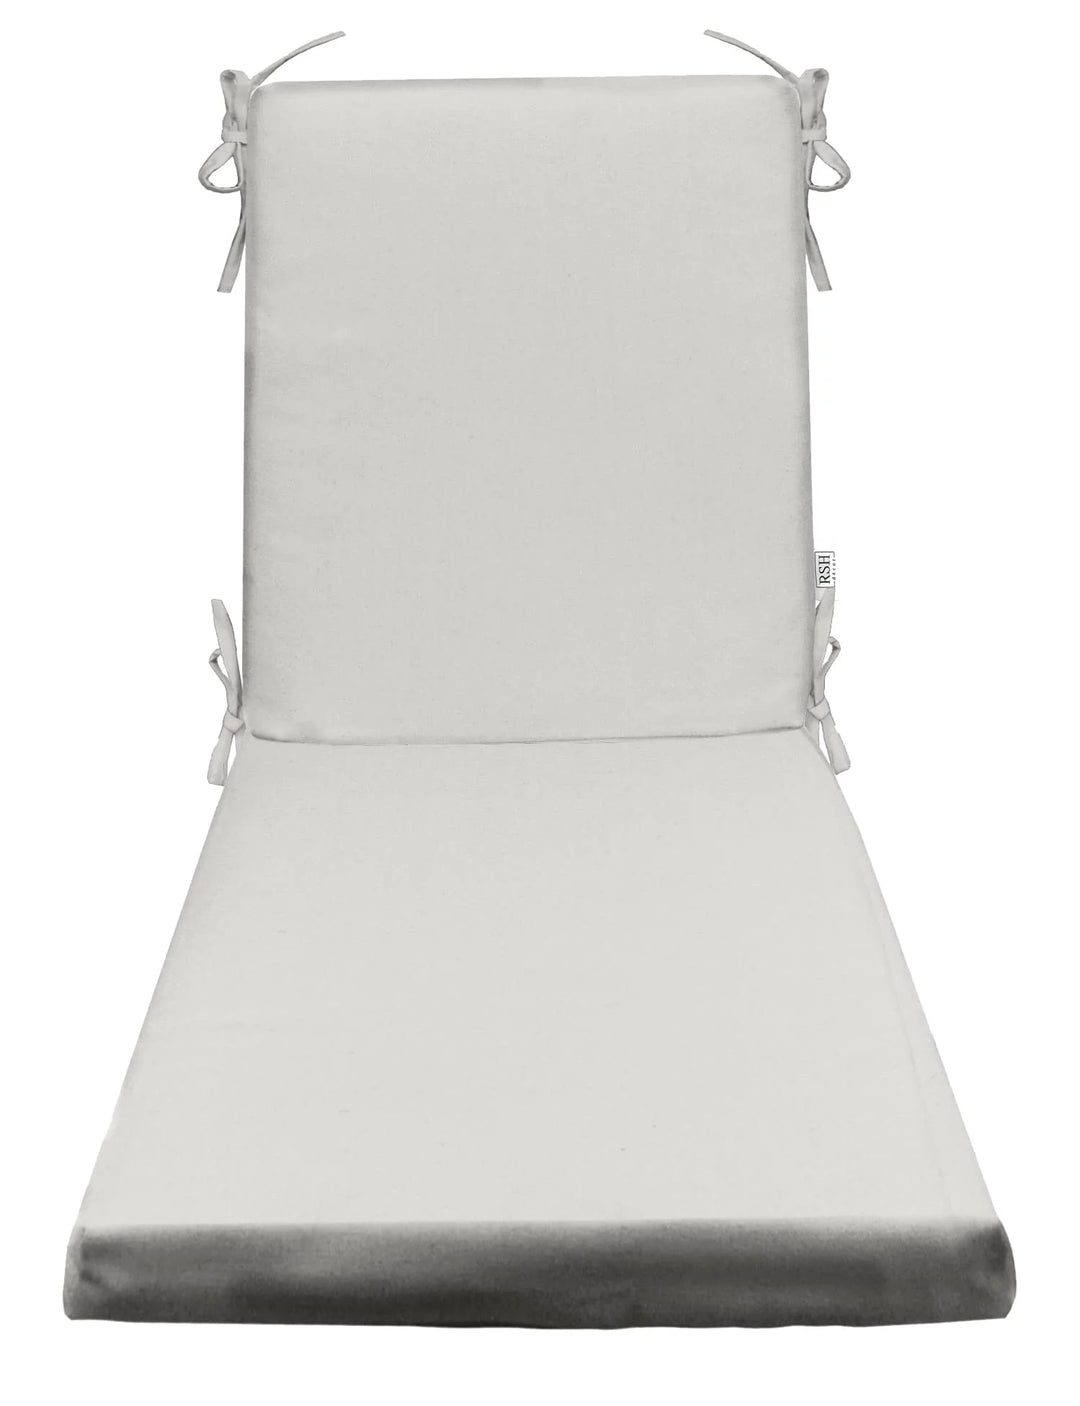 Chaise Lounge Chair Cushion, Tufted, 72" H x 22" W", Sunbrella Solid, Canvas White - RSH Decor